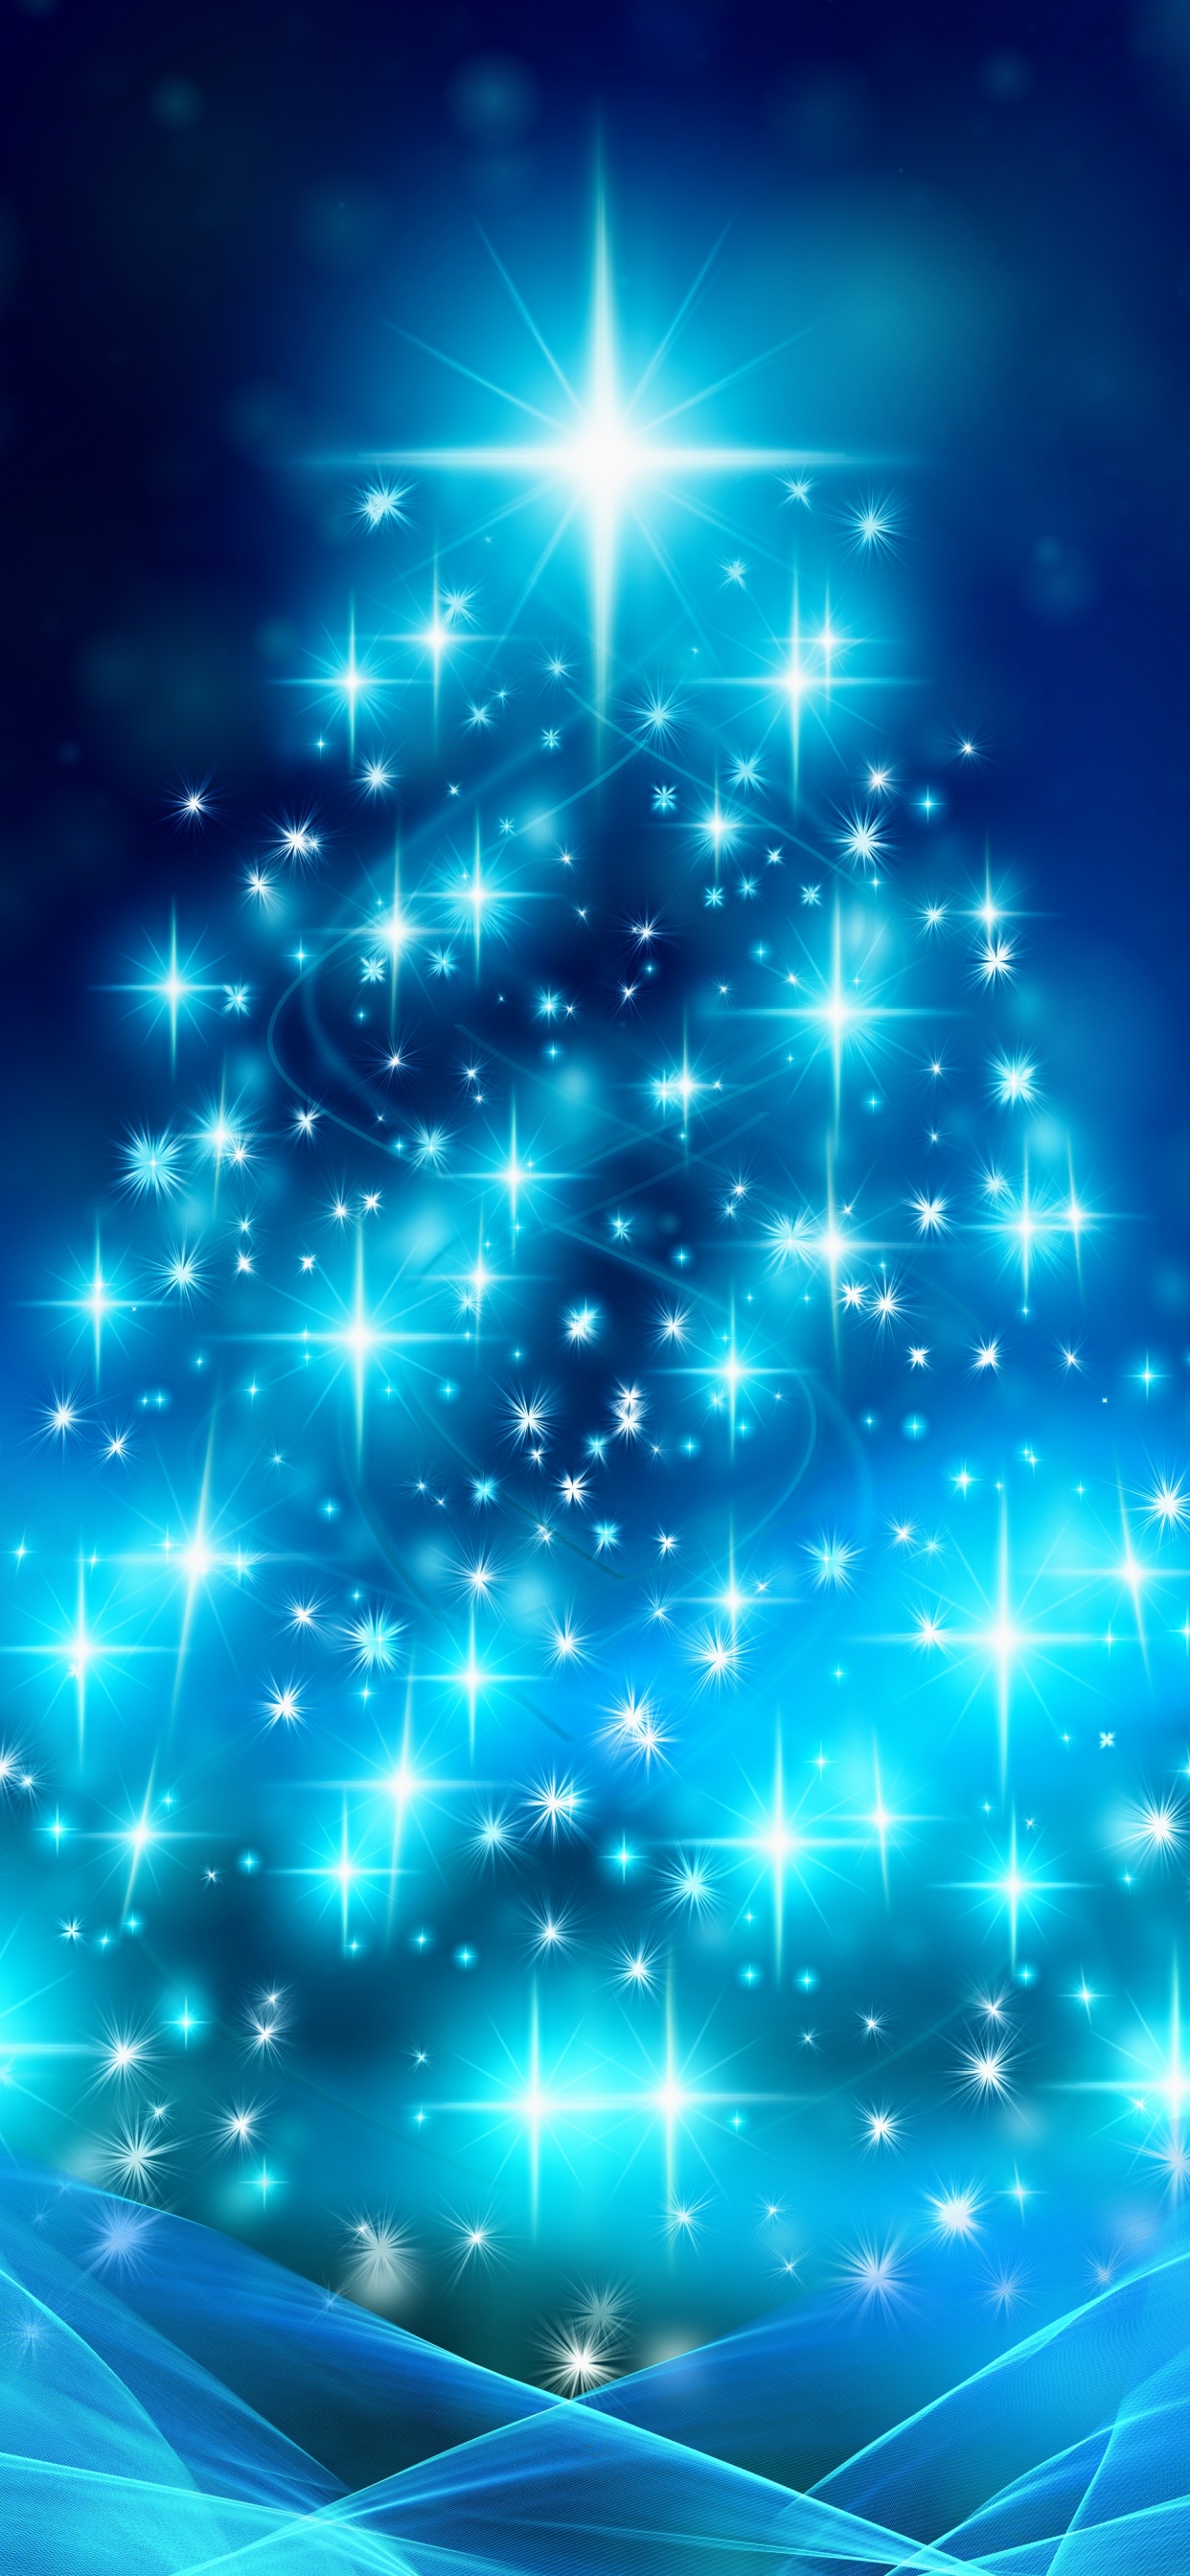 Weihnachten, Weihnachtsbaum, Weihnachtsdekoration, Blau, Baum. Wallpaper in 1242x2688 Resolution